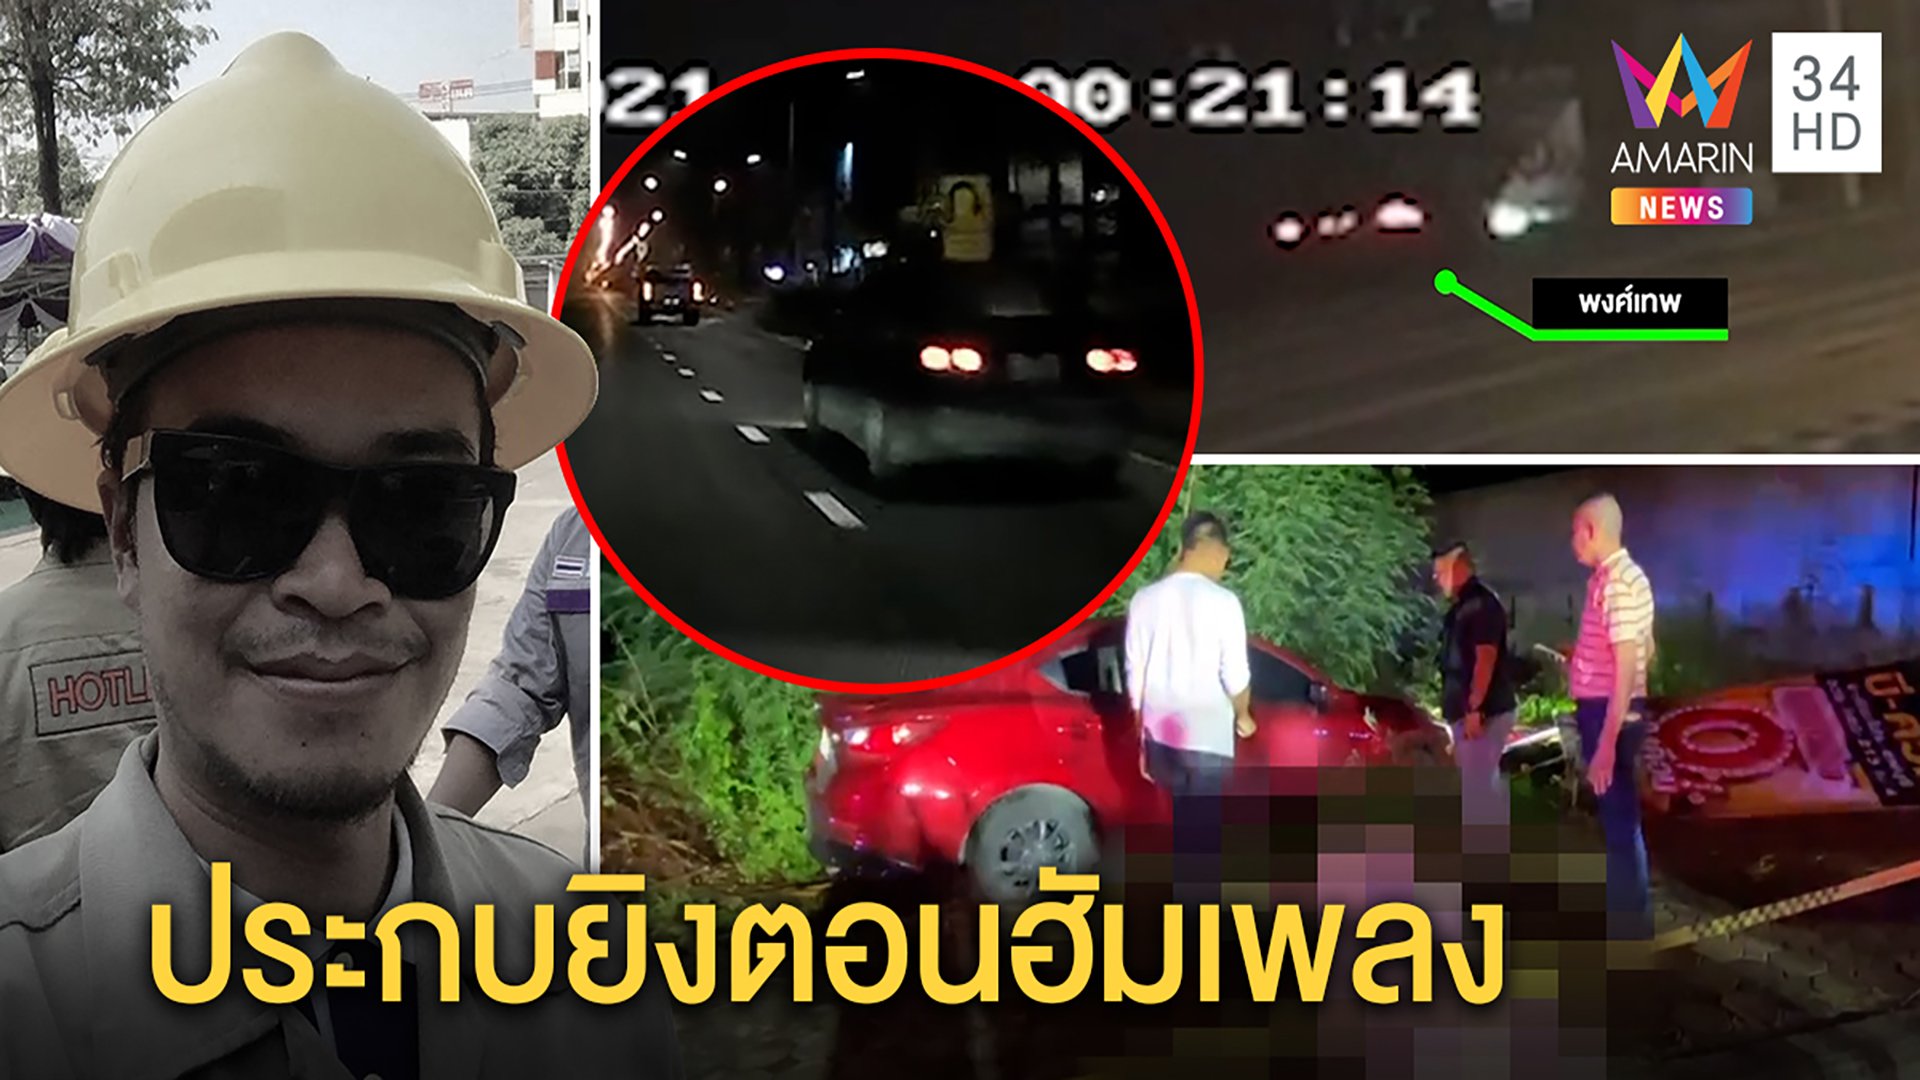 สุดโหดหนุ่มขับรถฮัมเพลงถูกดักยิง ภาพชัดกระสุนทะลุร่างรถตกถนน คาดปมขับปา | ทุบโต๊ะข่าว | 6 เม.ย. 64 | AMARIN TVHD34